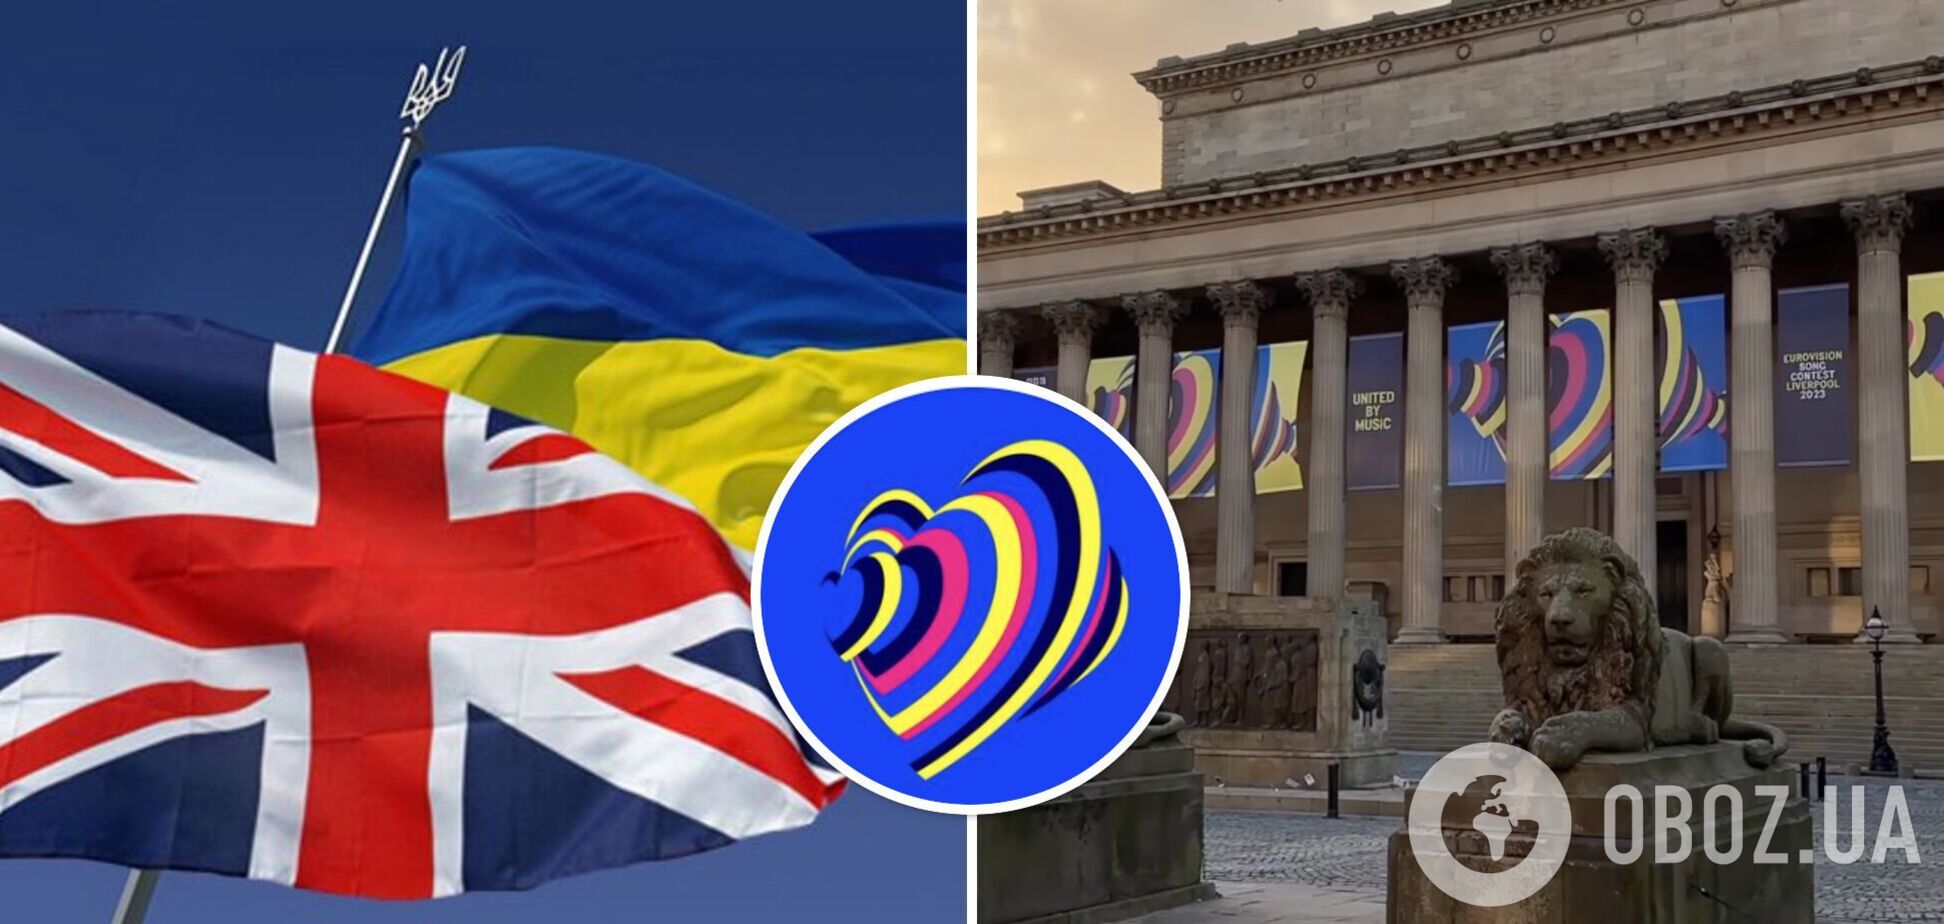 Організатори Євробачення представили офіційний логотип та слоган конкурсу: як обіграли кольори  України